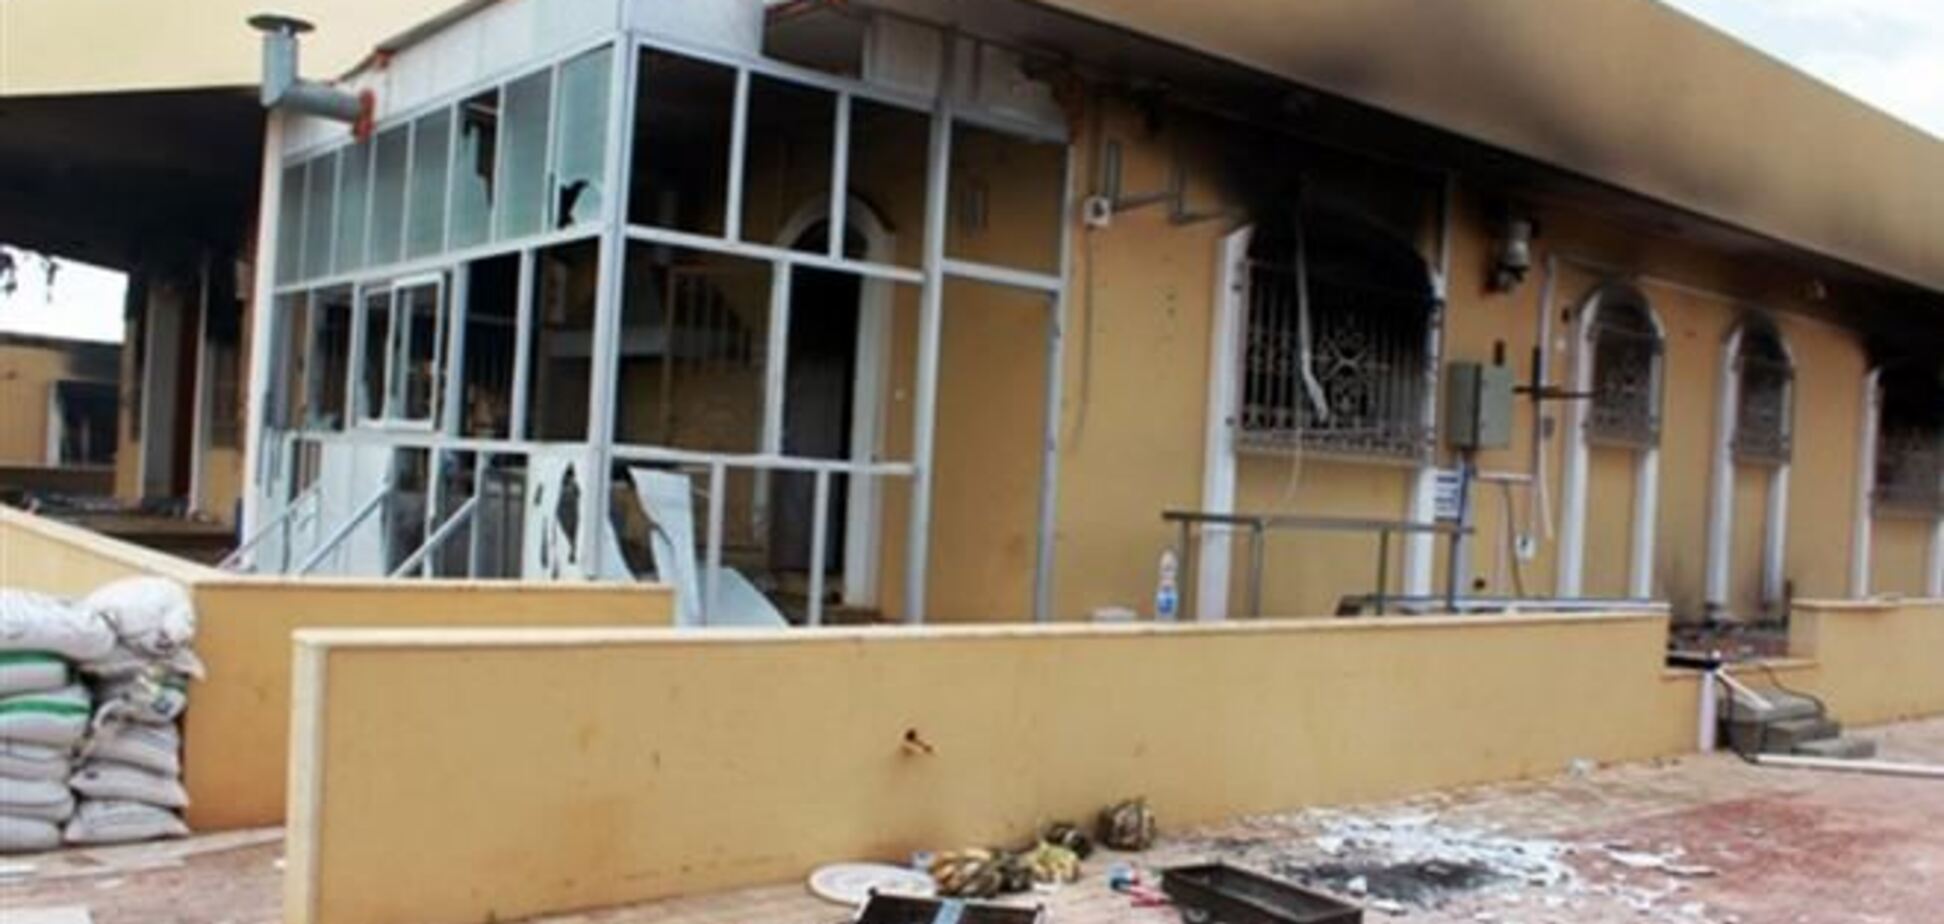 США объявили награду за информацию о нападавших на консульство в Бенгази